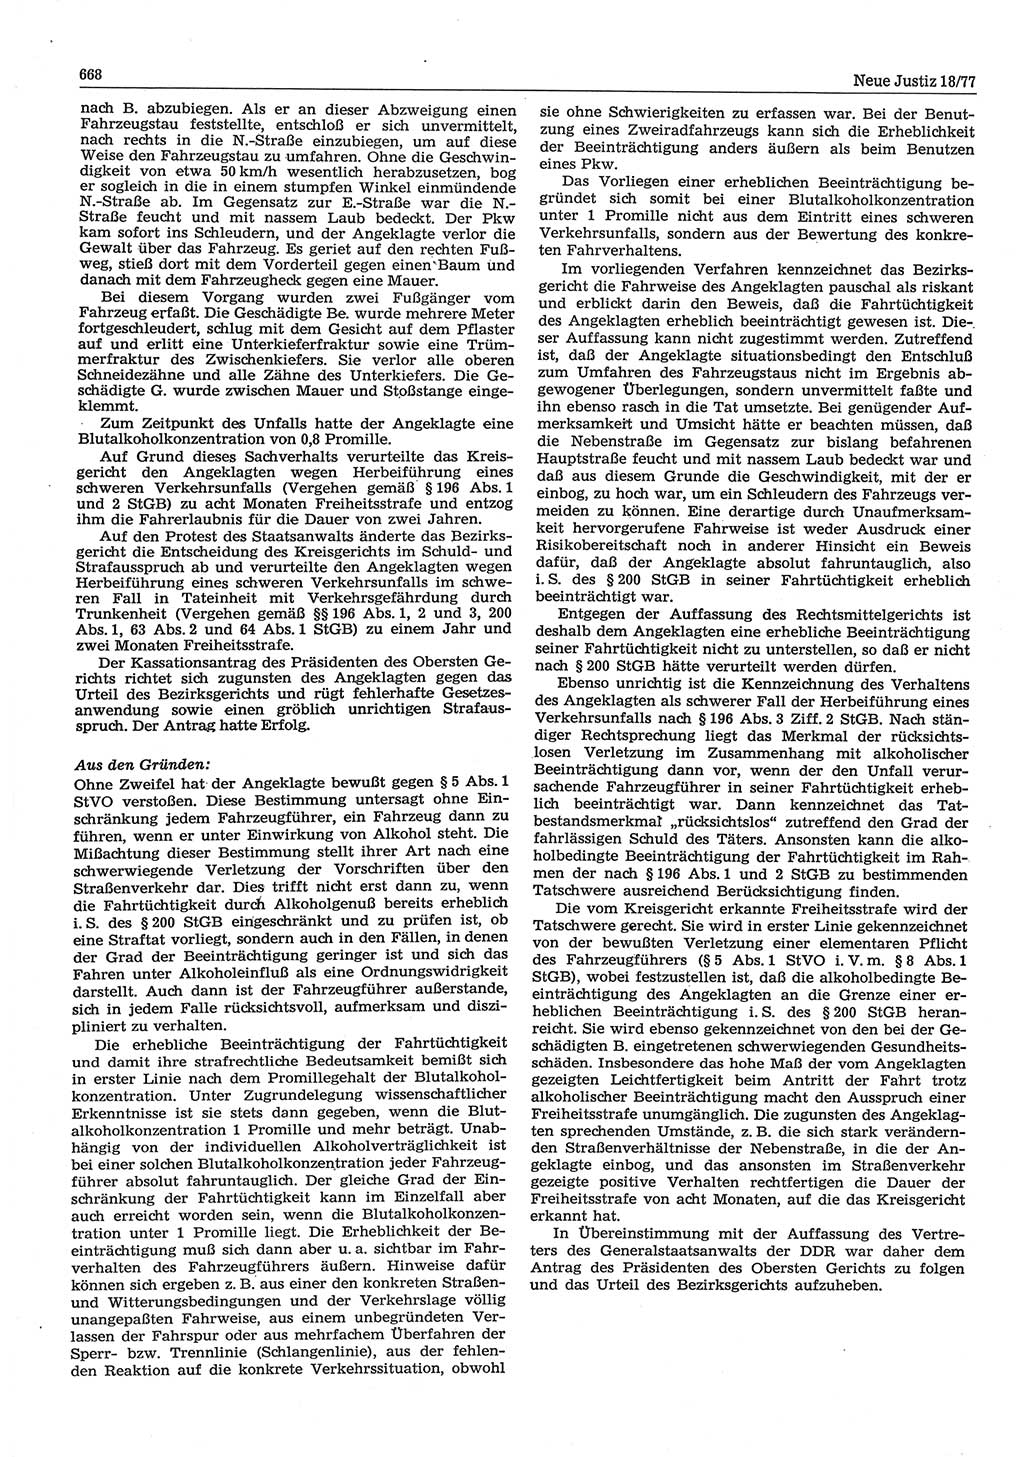 Neue Justiz (NJ), Zeitschrift für Recht und Rechtswissenschaft-Zeitschrift, sozialistisches Recht und Gesetzlichkeit, 31. Jahrgang 1977, Seite 668 (NJ DDR 1977, S. 668)